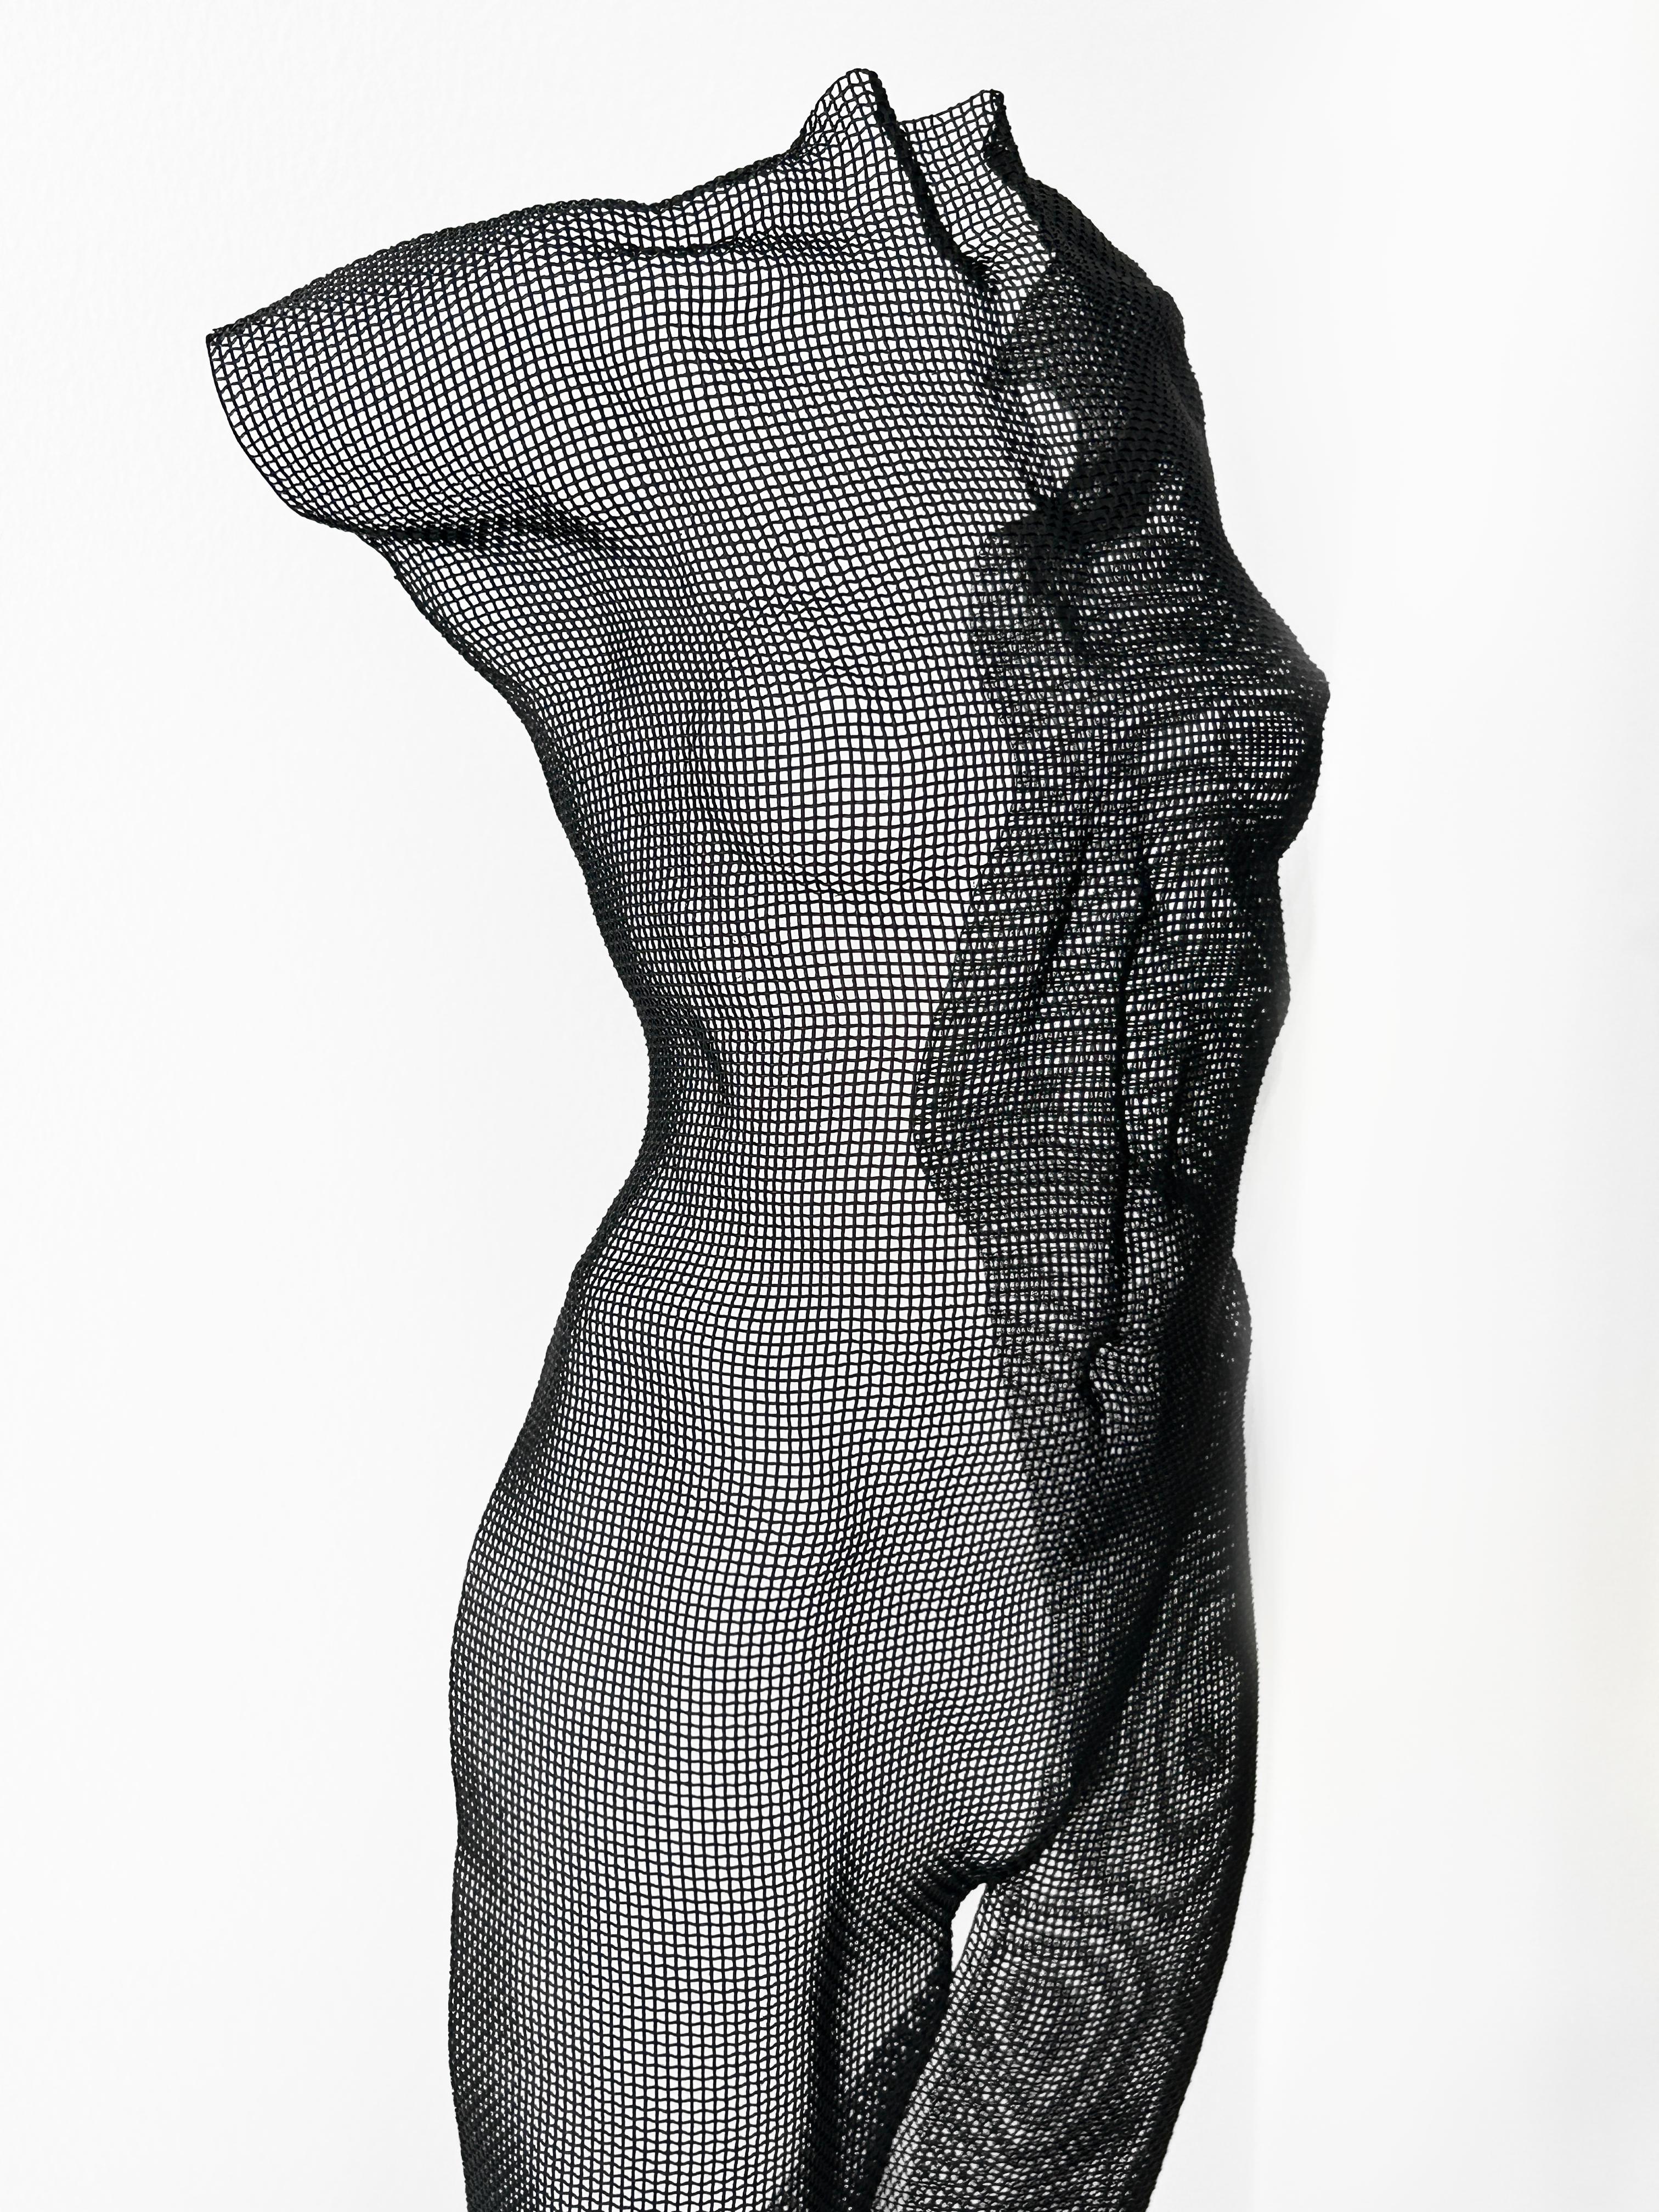 YUBE, 2021, Stahlgeflecht-Skulptur – Sculpture von David Begbie